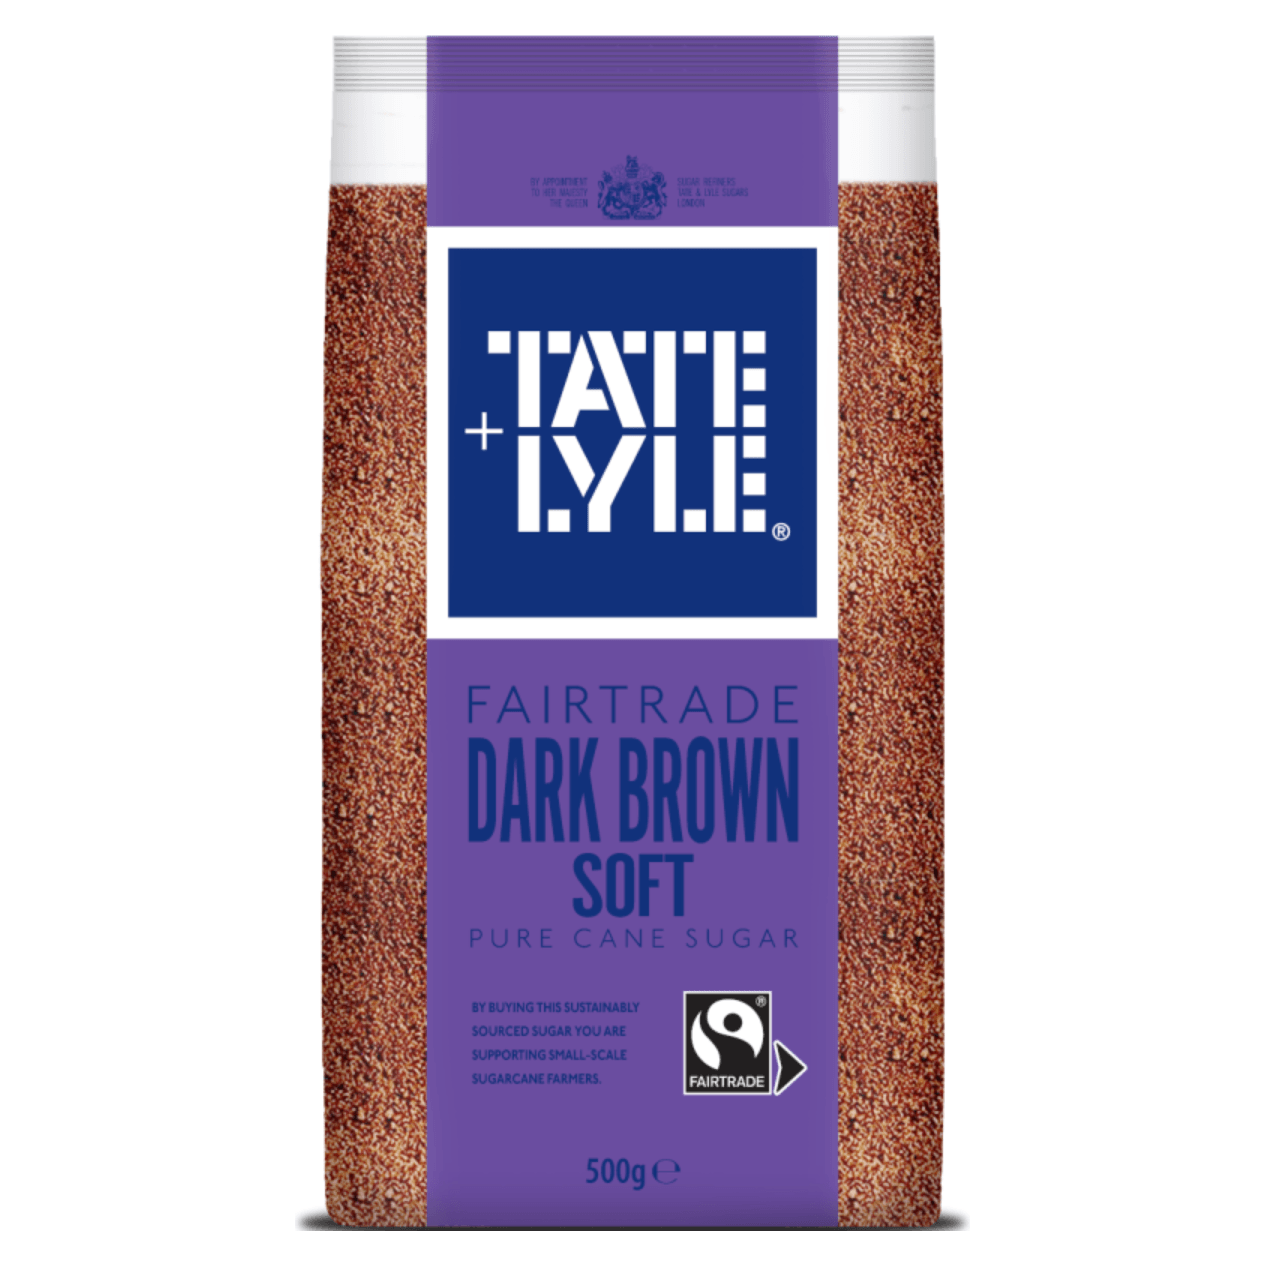 Sucre Fairtrade Dark Brown 500g - TATE & LYLE